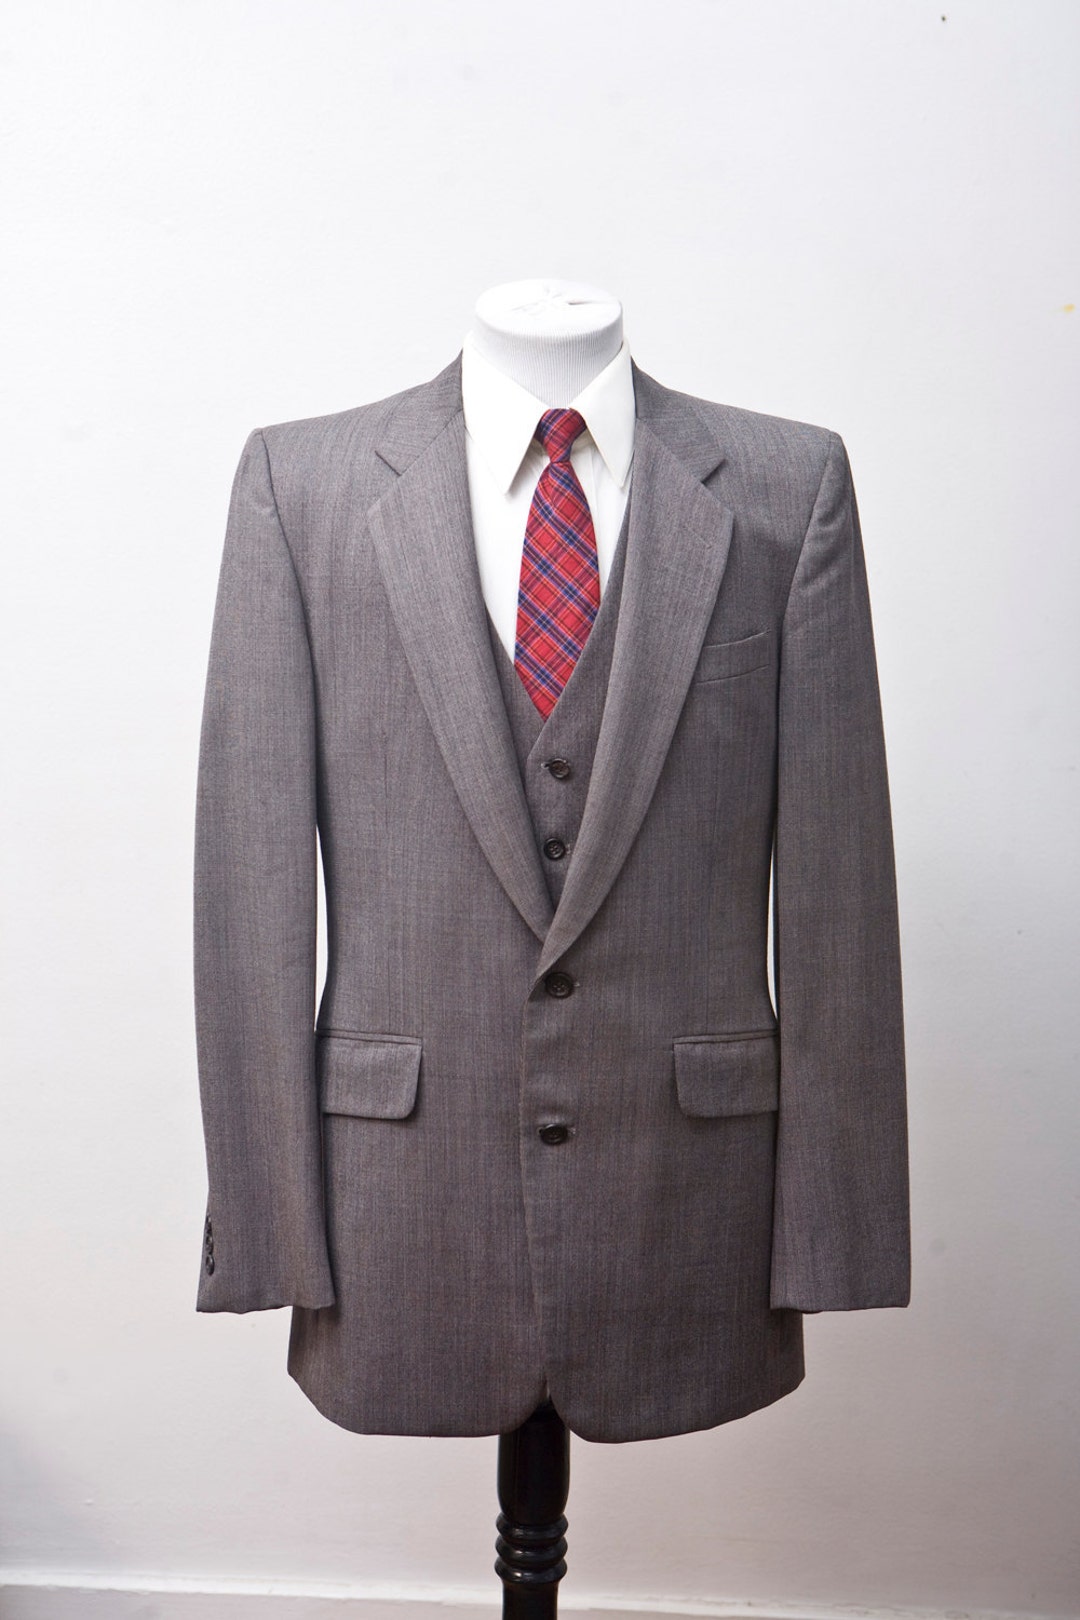 Men's Blazer and Vest / Sport Coat and Waistcoat / Brown - Etsy